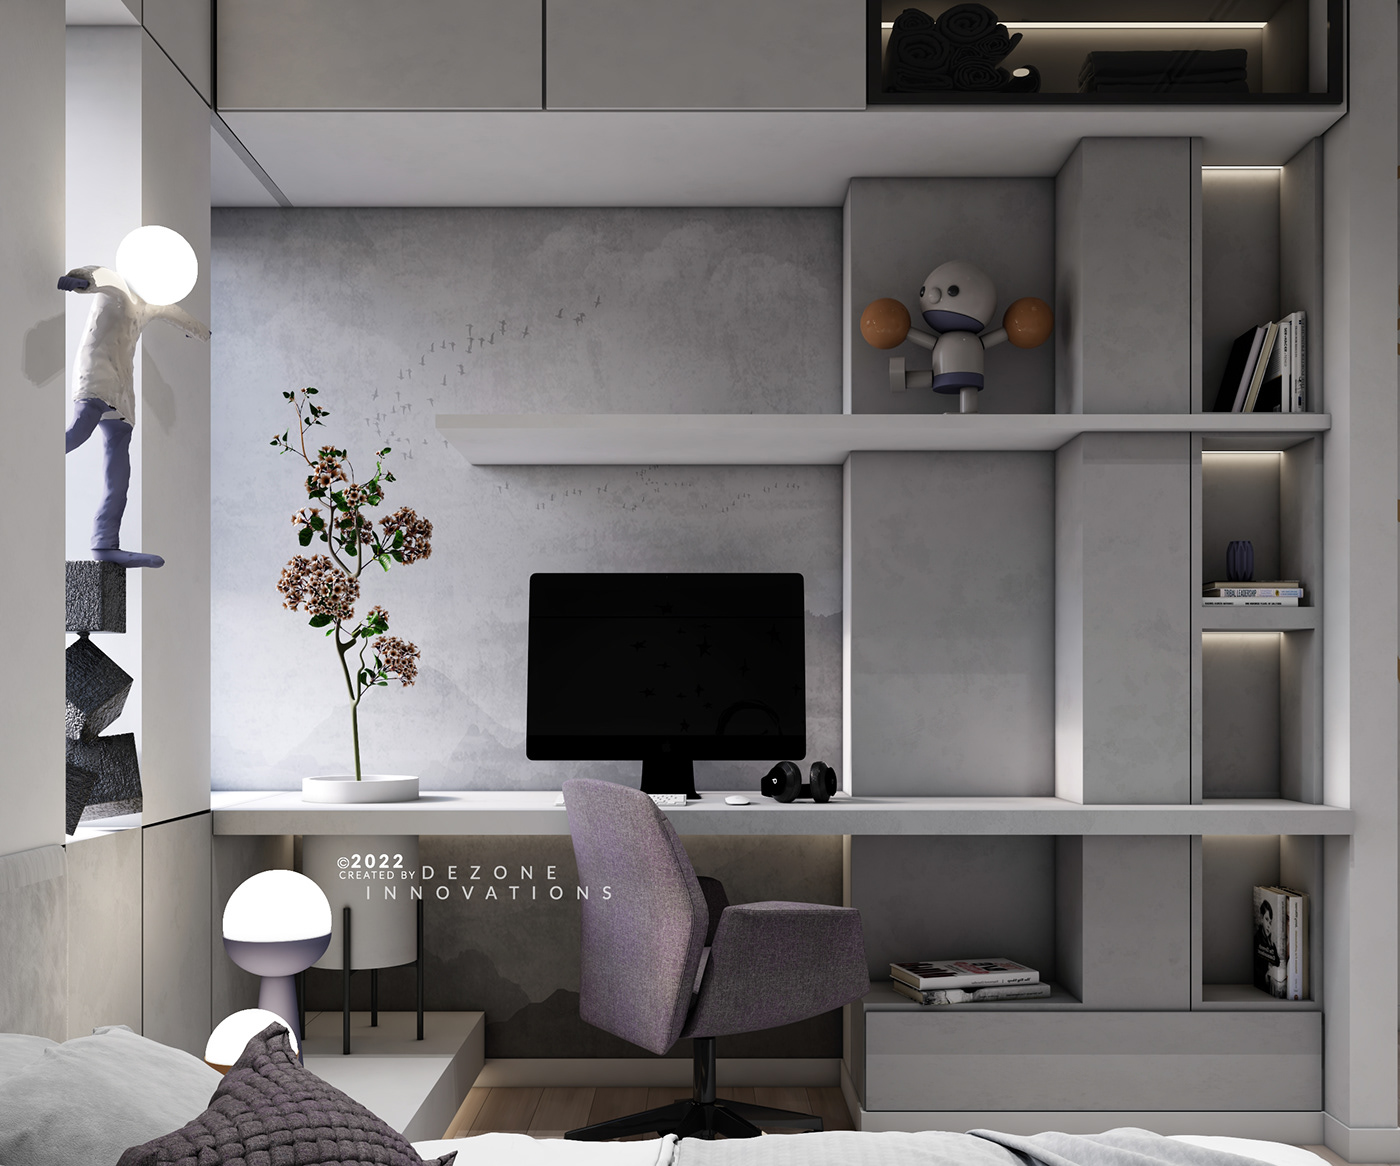 3ds max architecture interior design  modern visualization